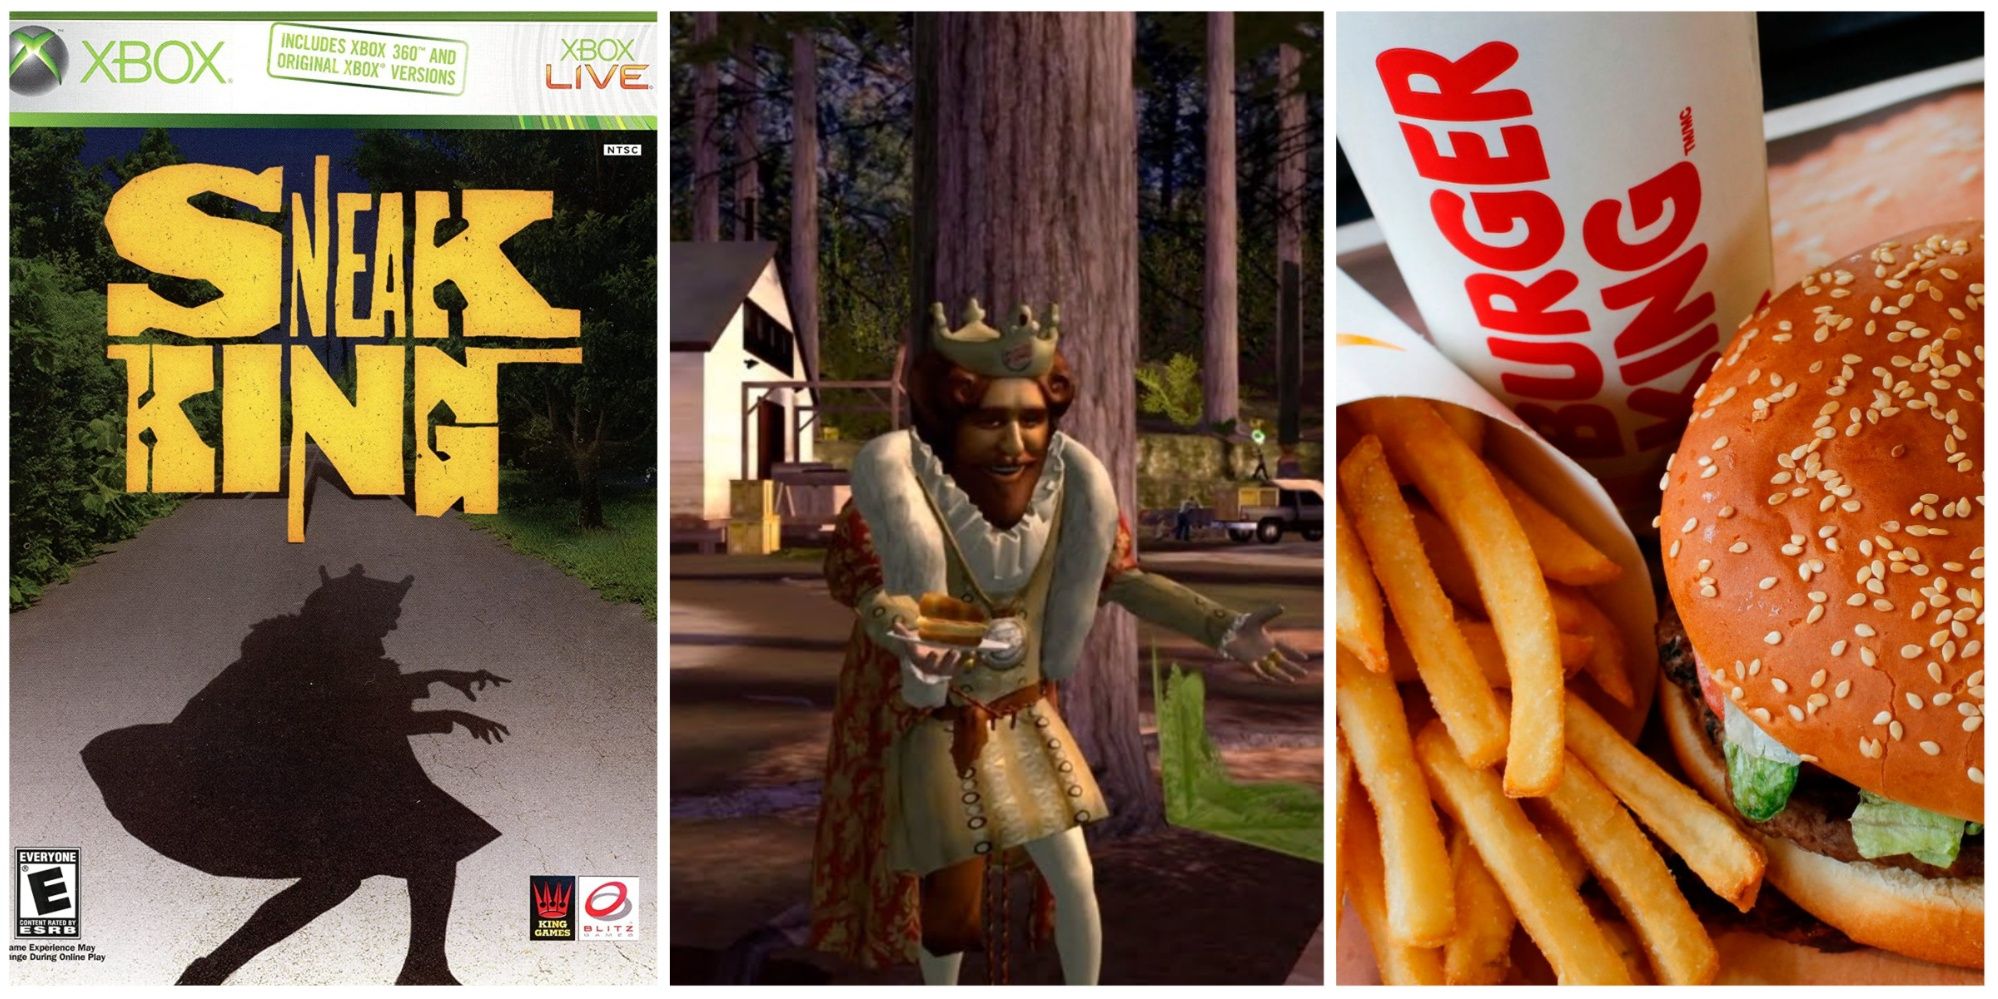 Sneak King Box Art, Sneak King Gameplay, Burger King Burger and Fries